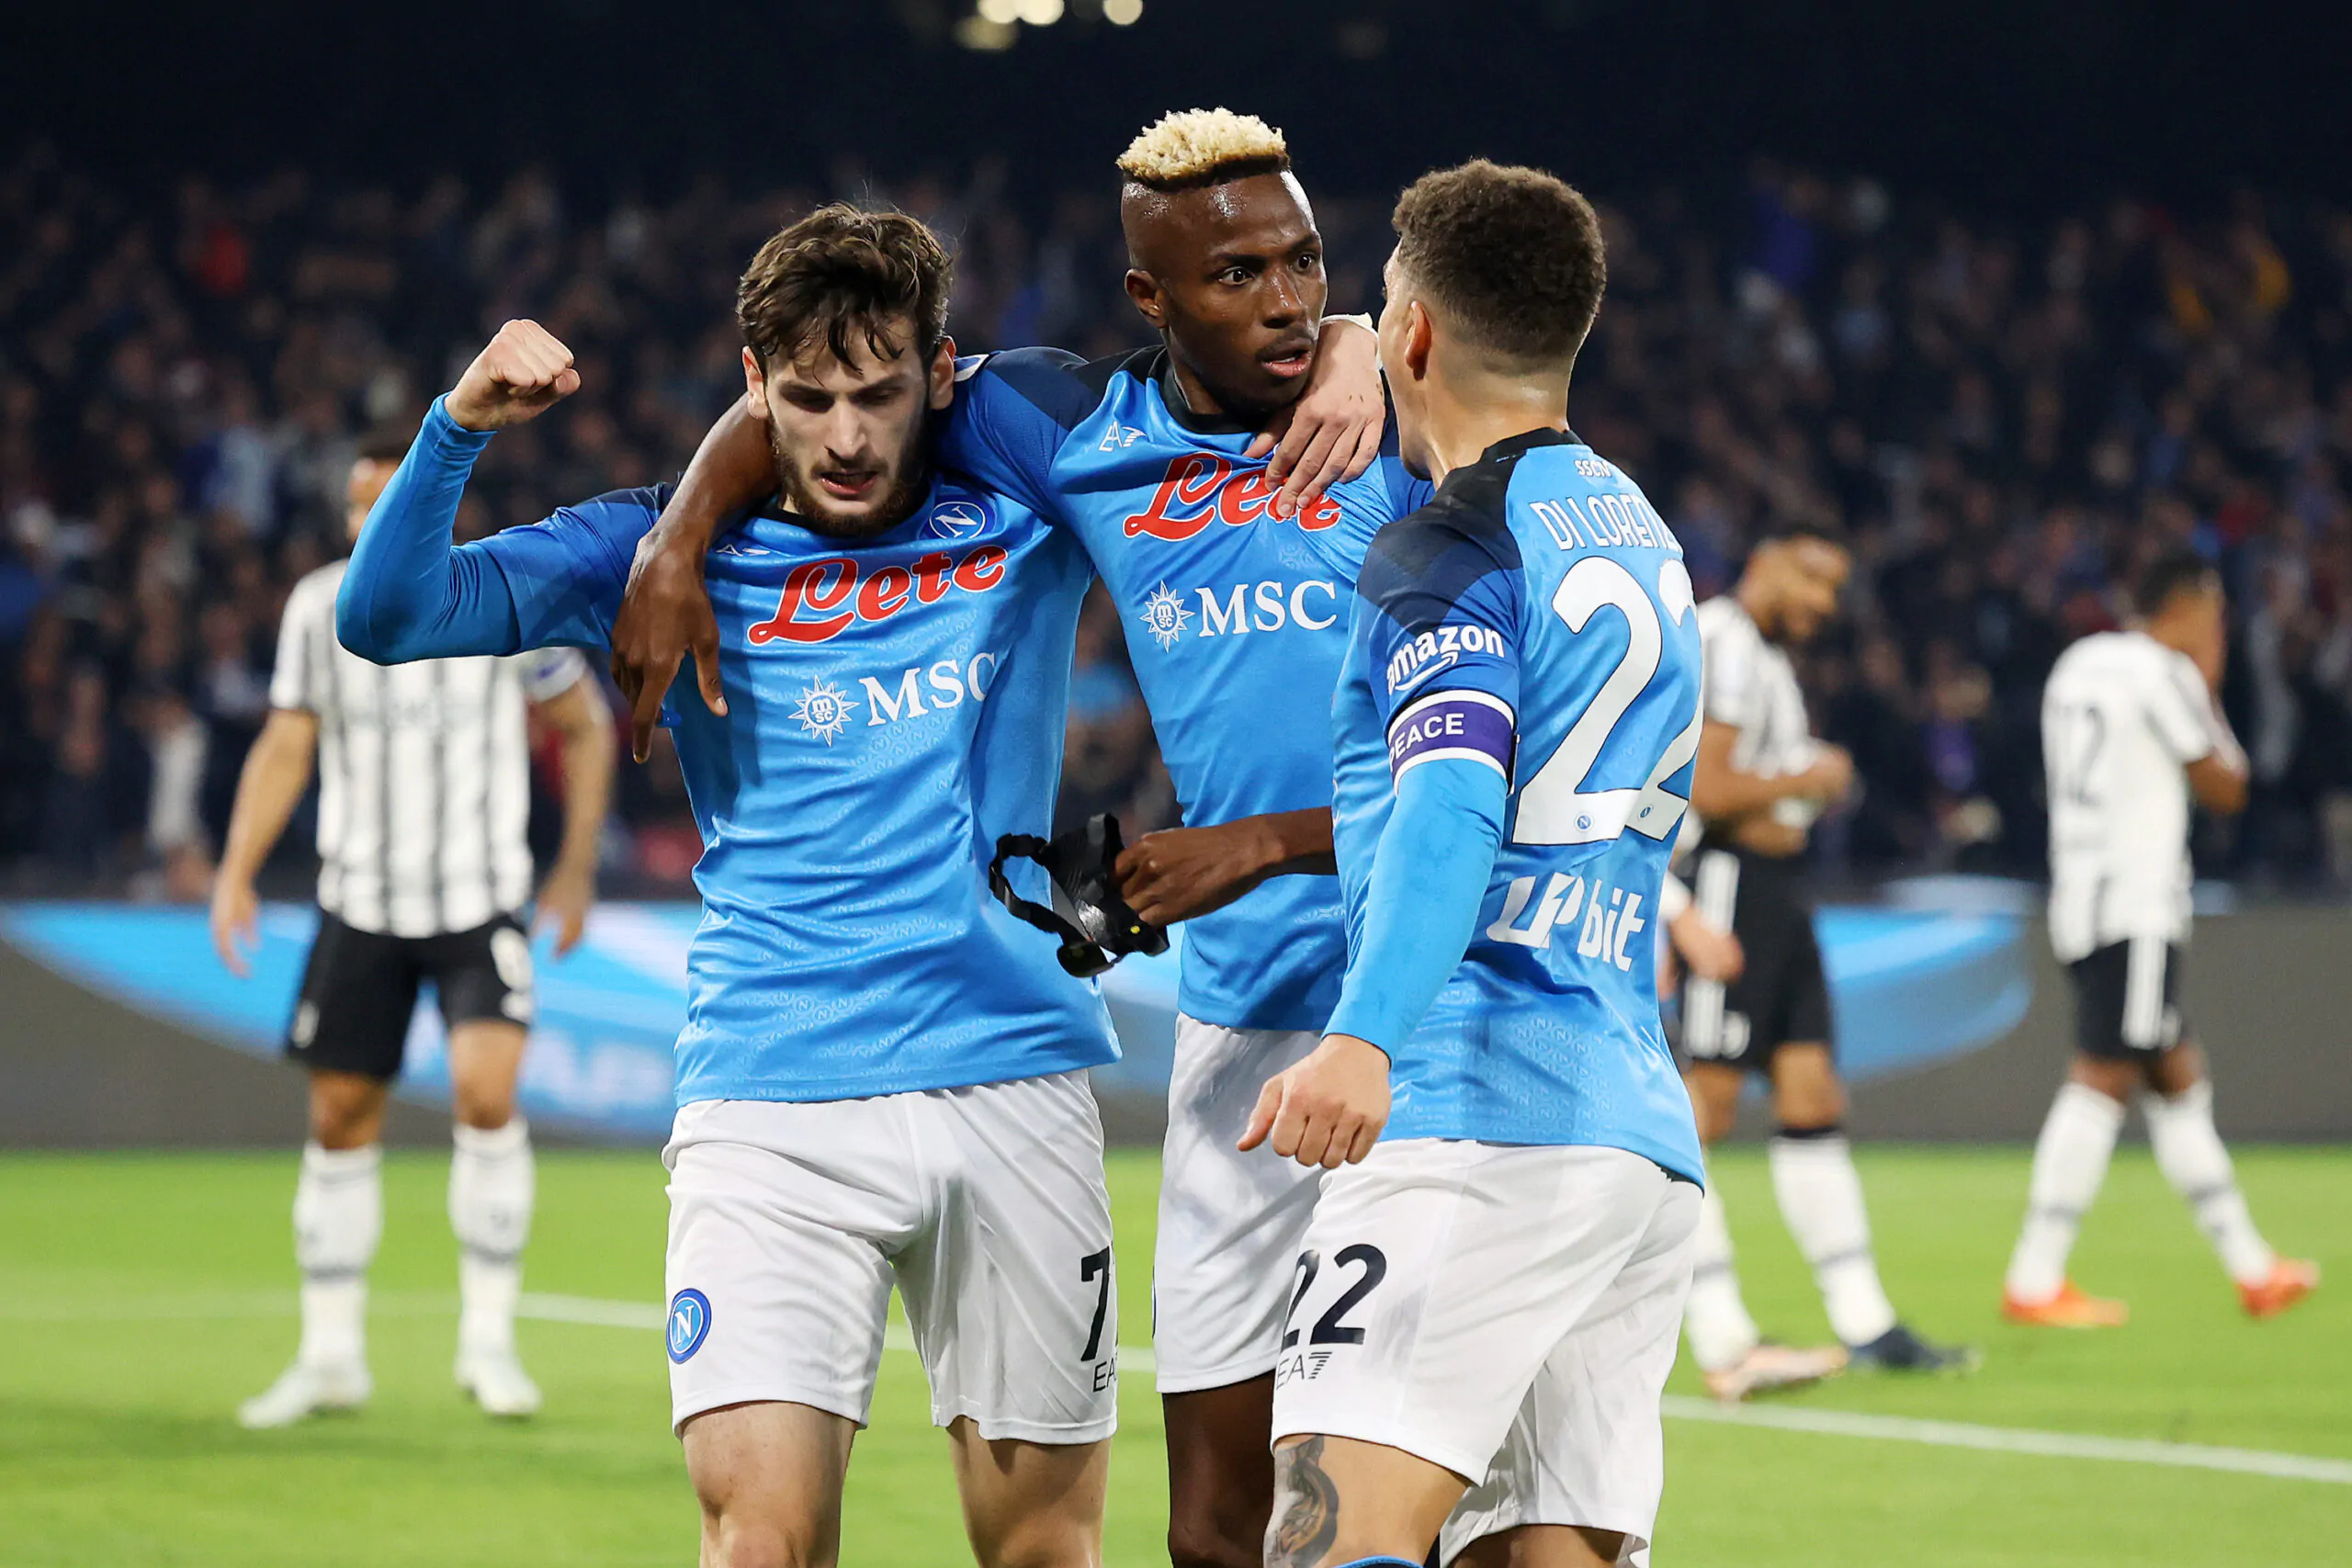 Uno scommettitore punta sul 5-1 tra Napoli e Juve e vince 36.750 €